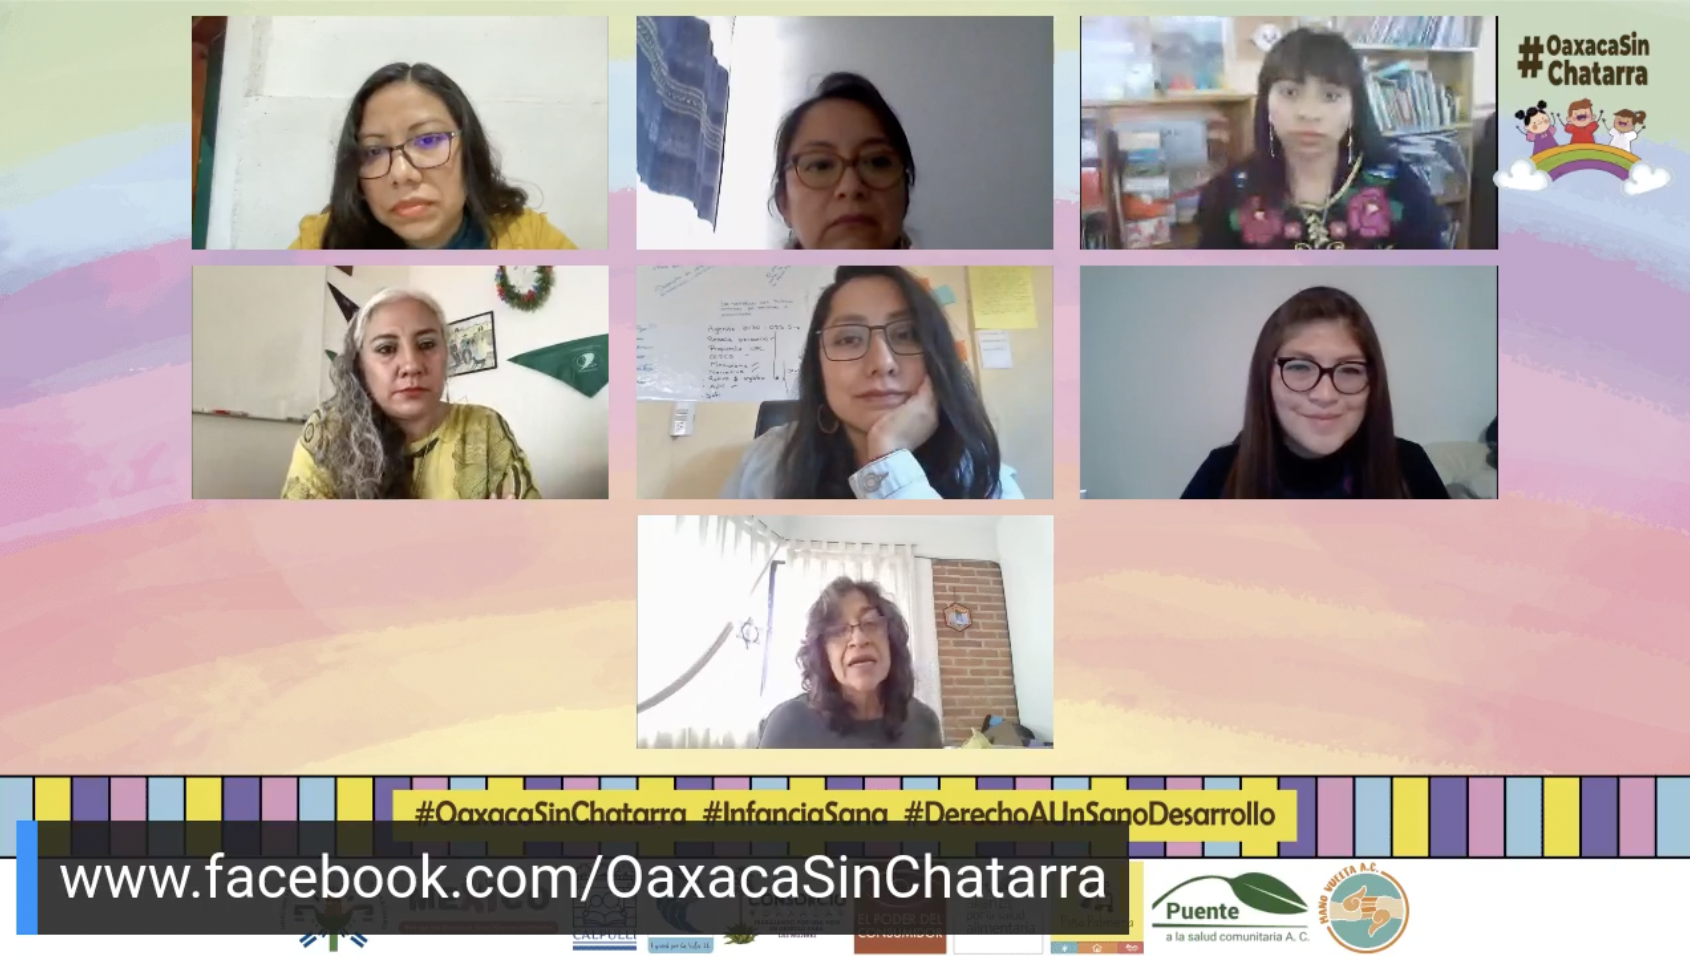 Llaman al Gobierno de Oaxaca a asignar presupuesto y política pública para implementar Ley #OaxacaSinChatarra